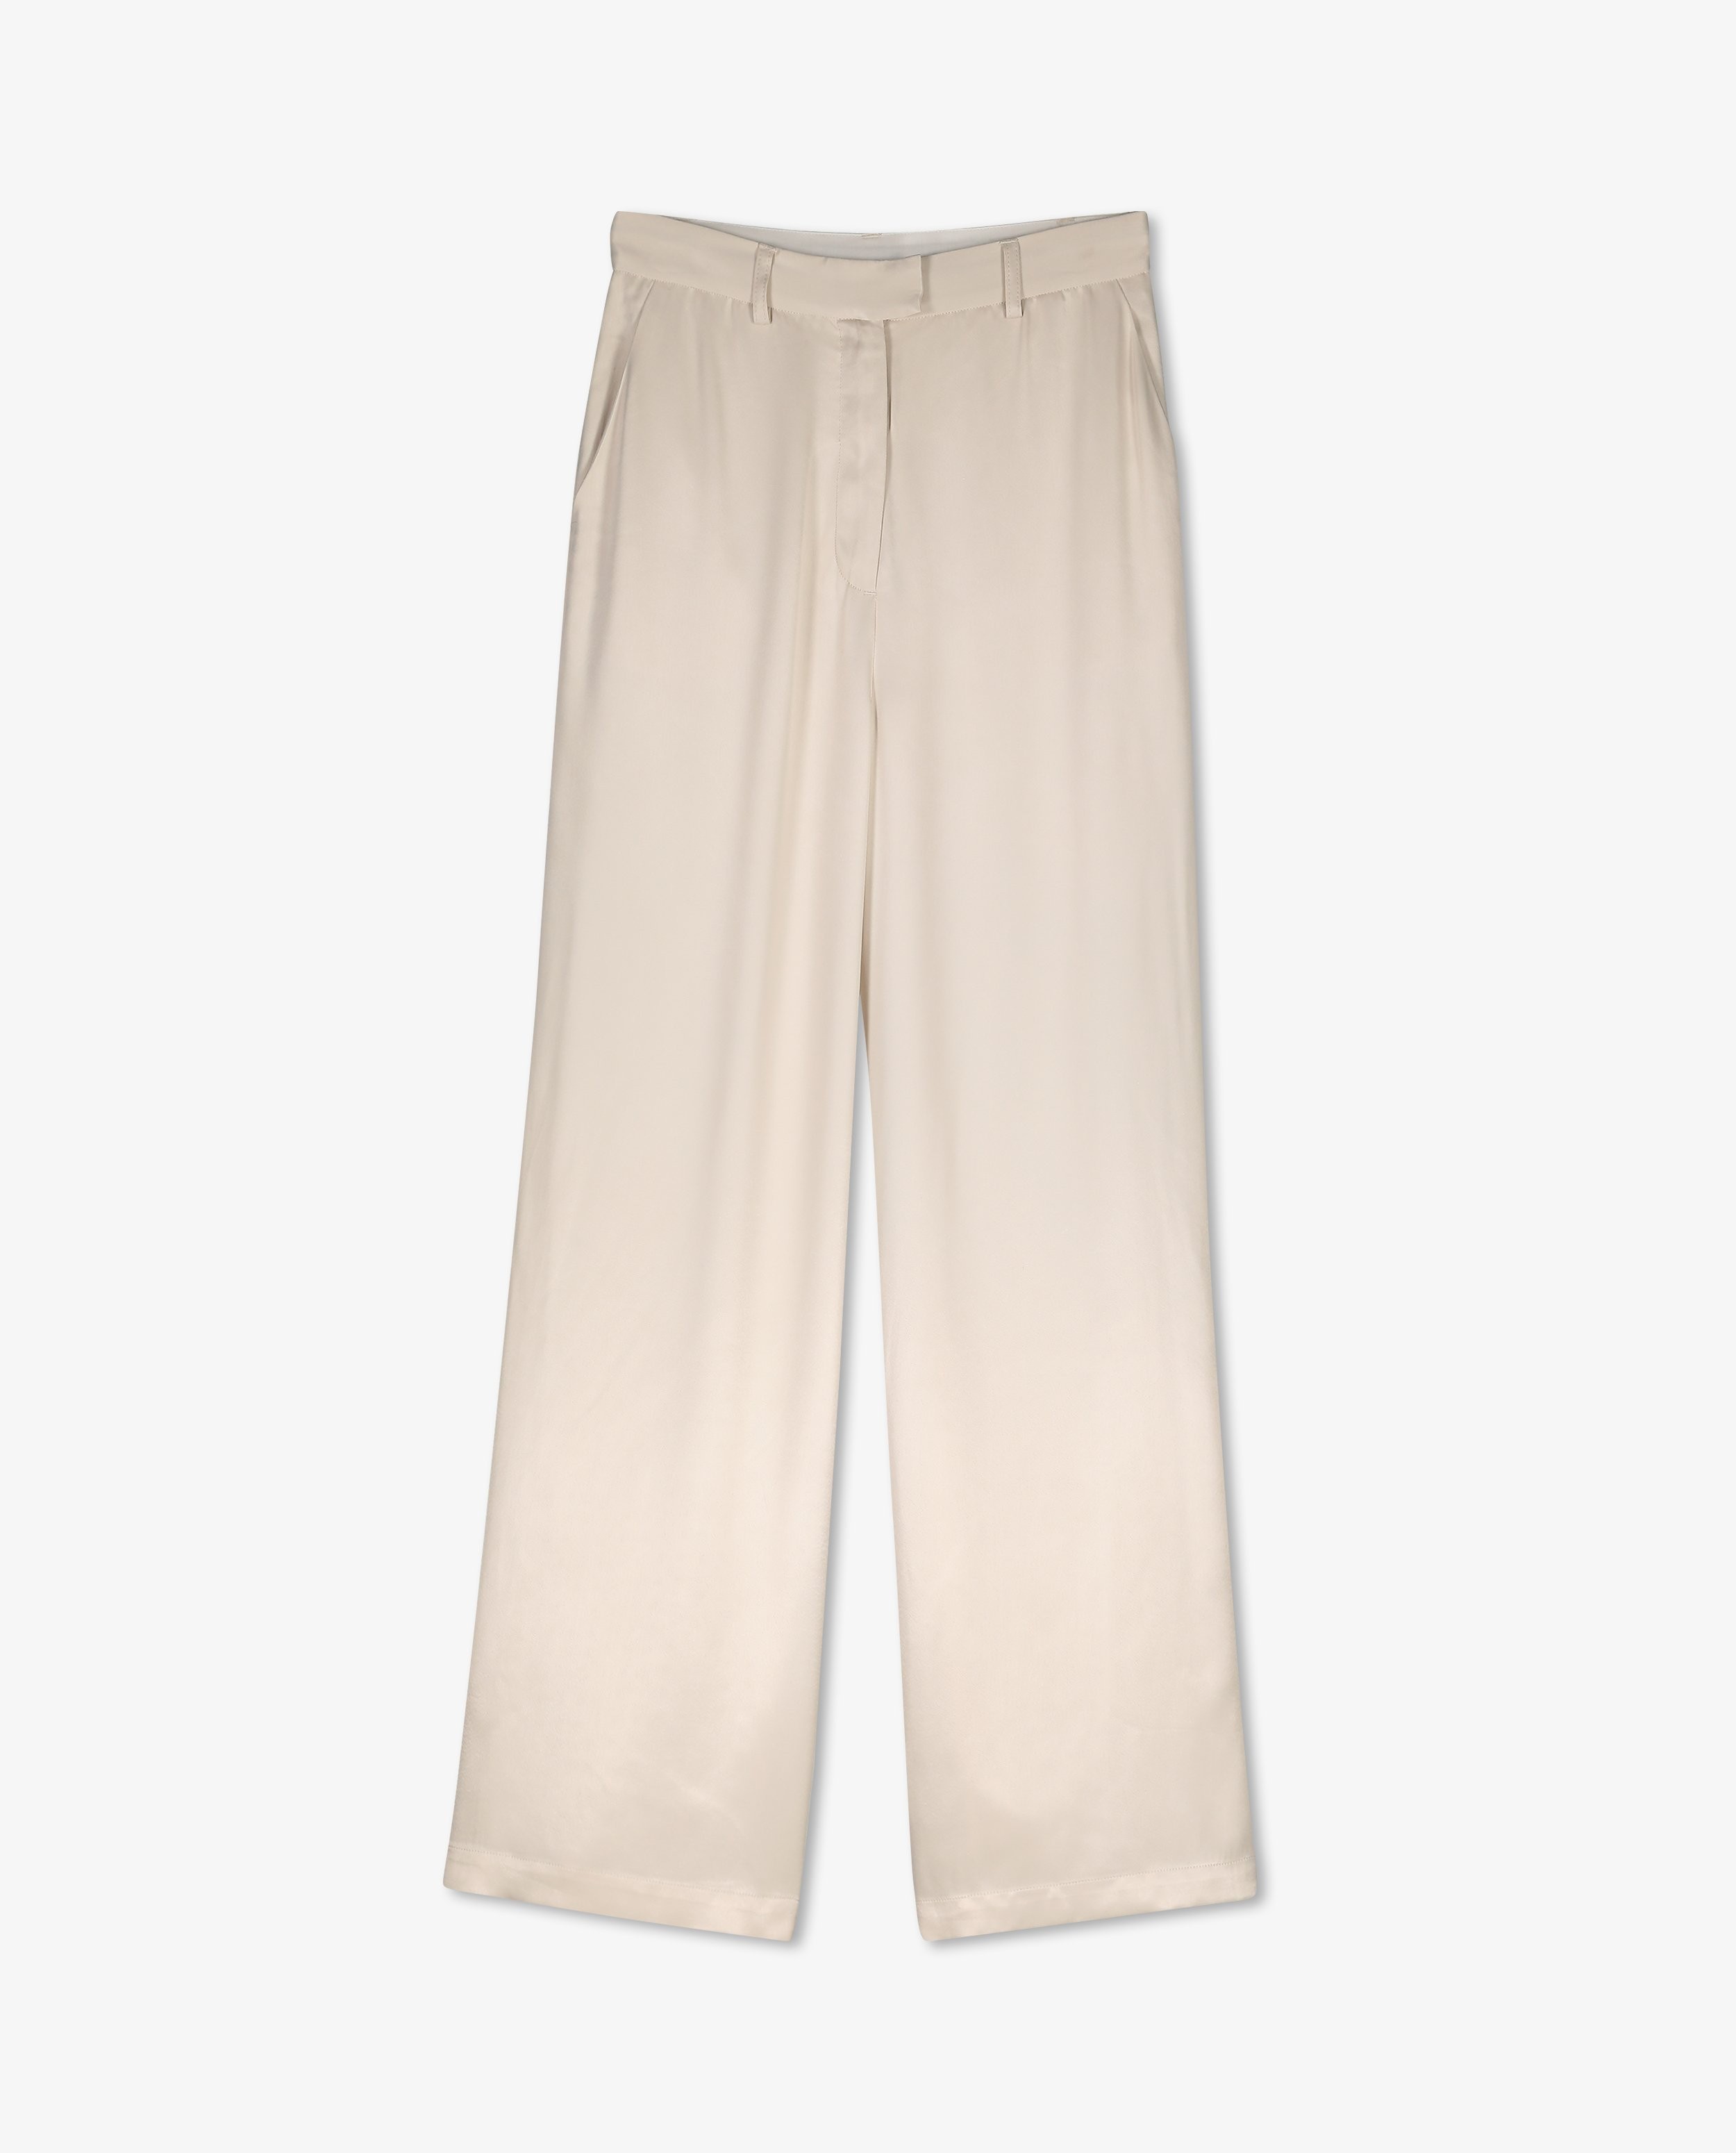 Pantalons - Pantalon beige clair à jambes larges